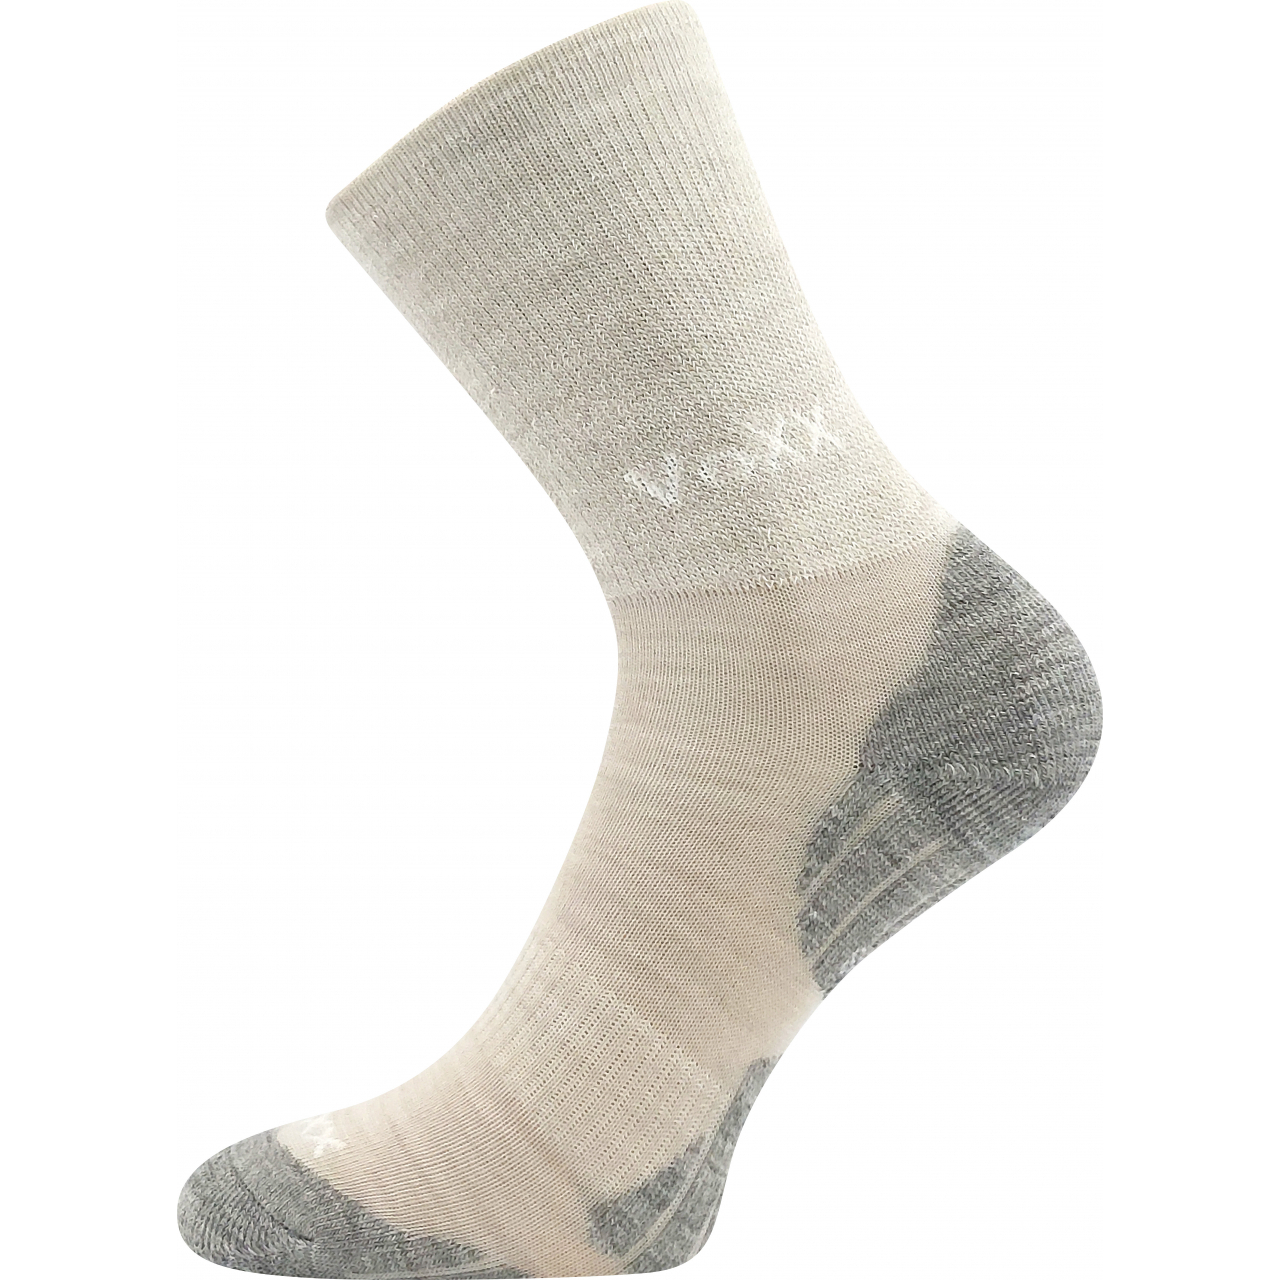 Ponožky zimní dětské Voxx Irizarik - béžové, 20-24